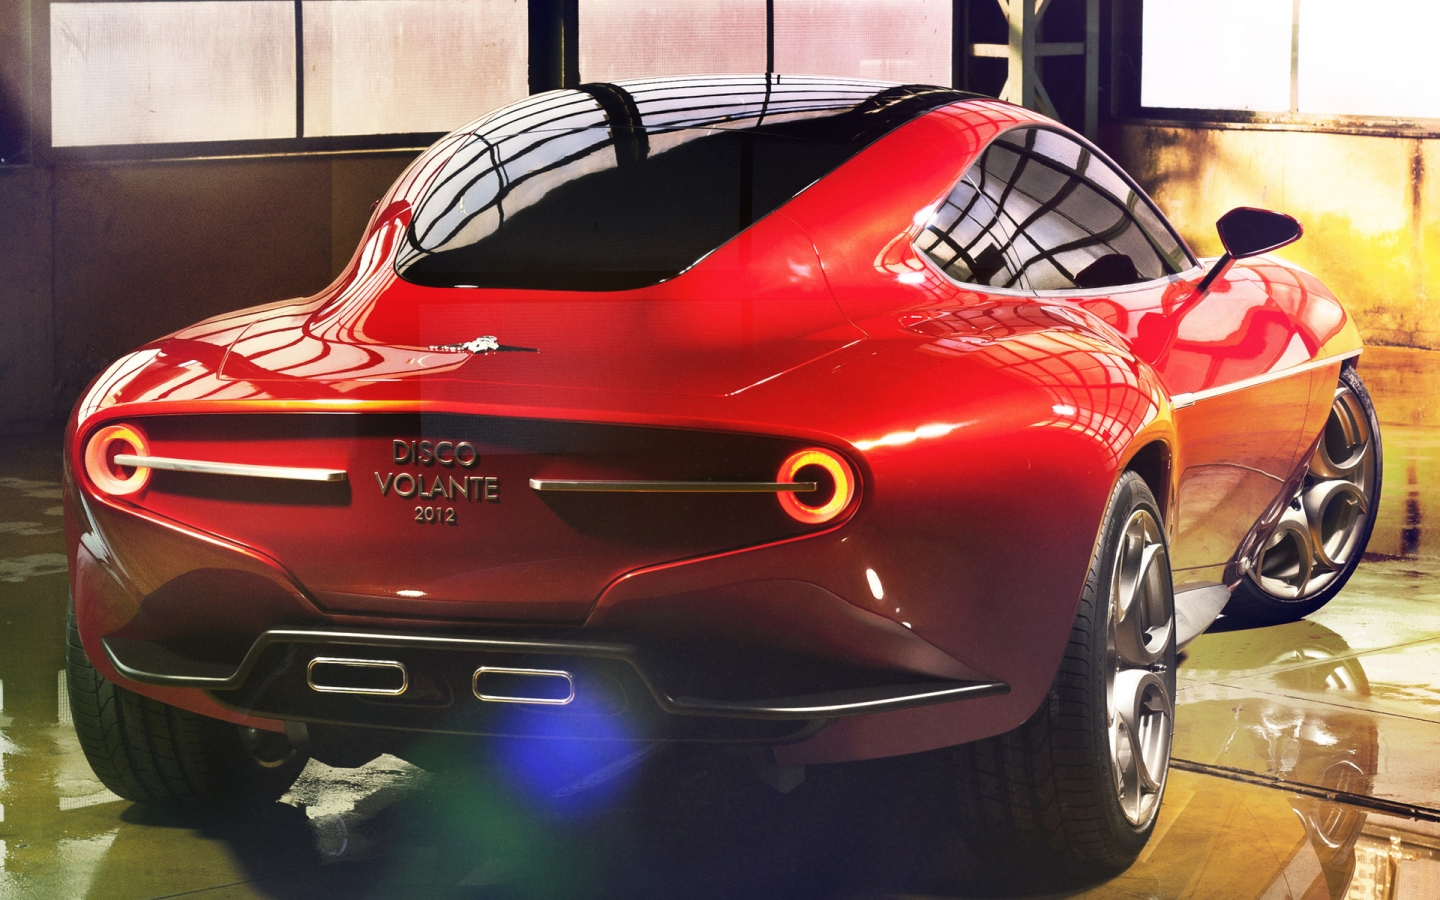 Alfa Romeo Disco Volante for 1440 x 900 widescreen resolution